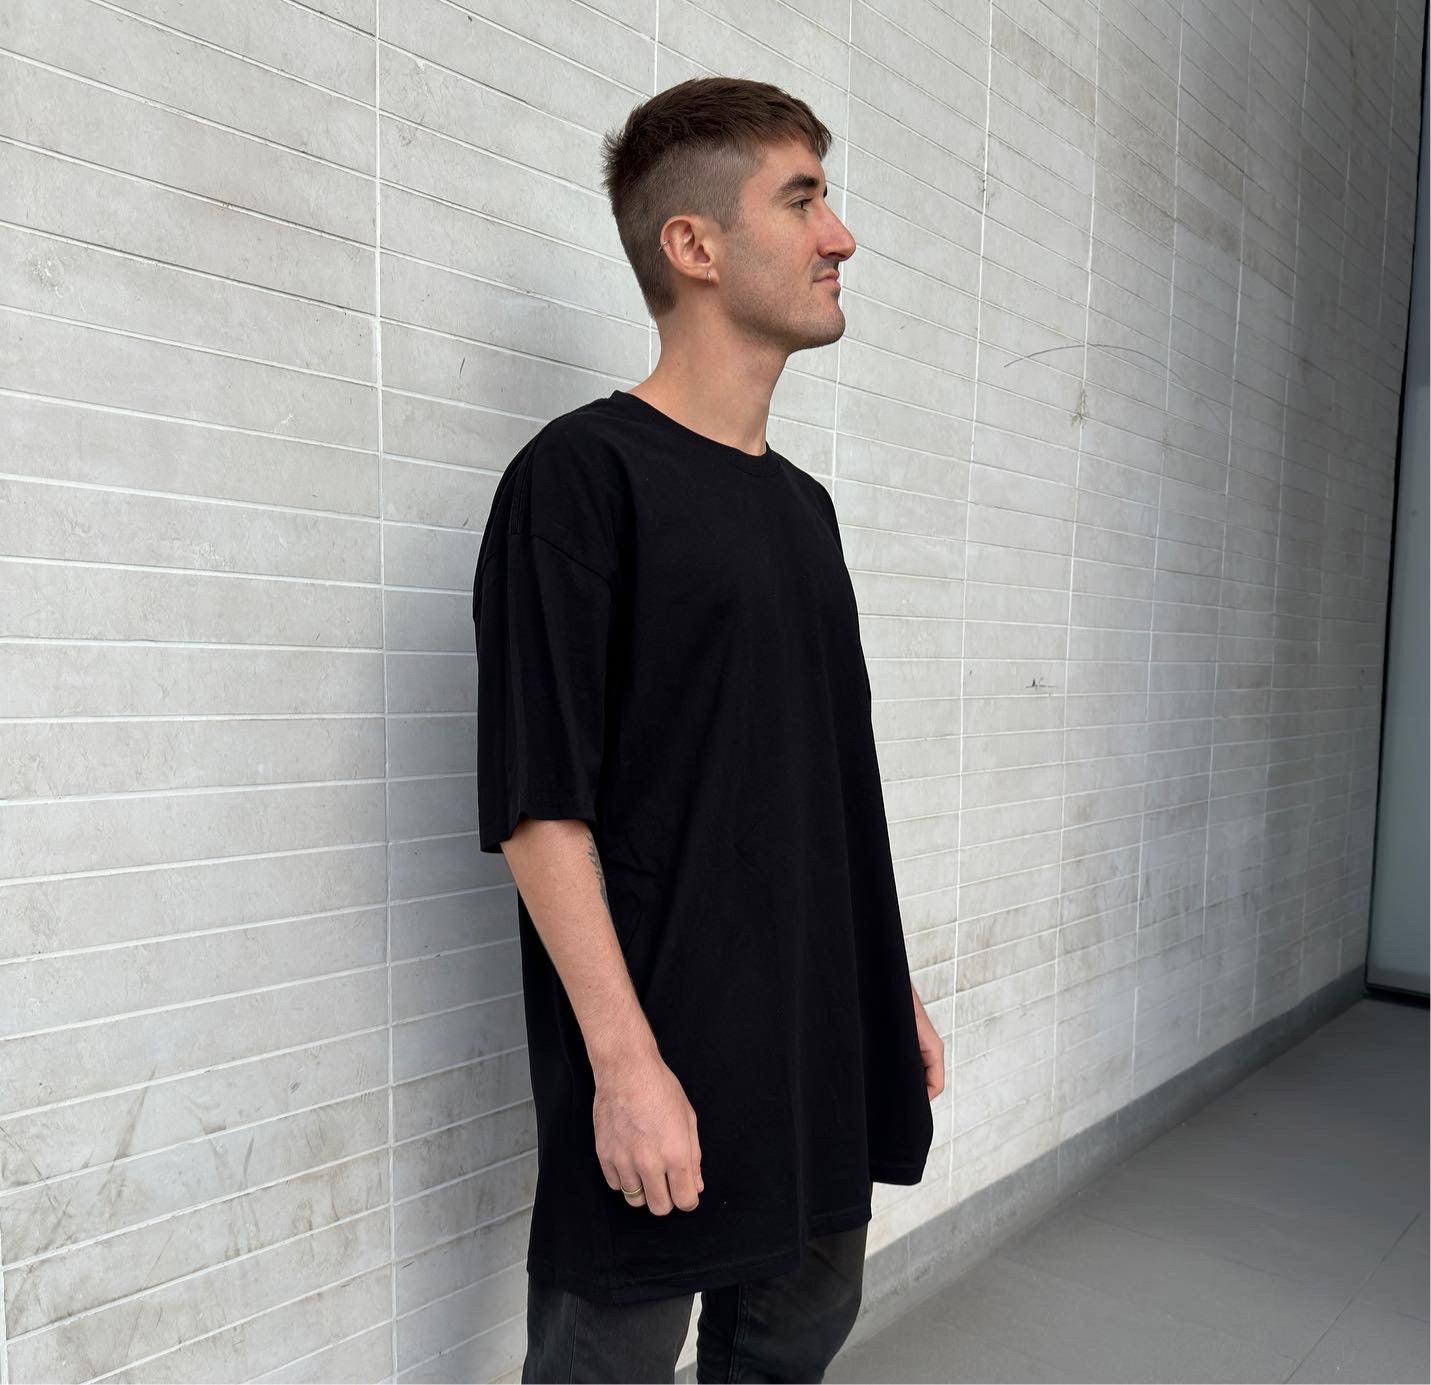 Model from side perspective wearing black oversized t-shirt in luxury streetwear aesthetic